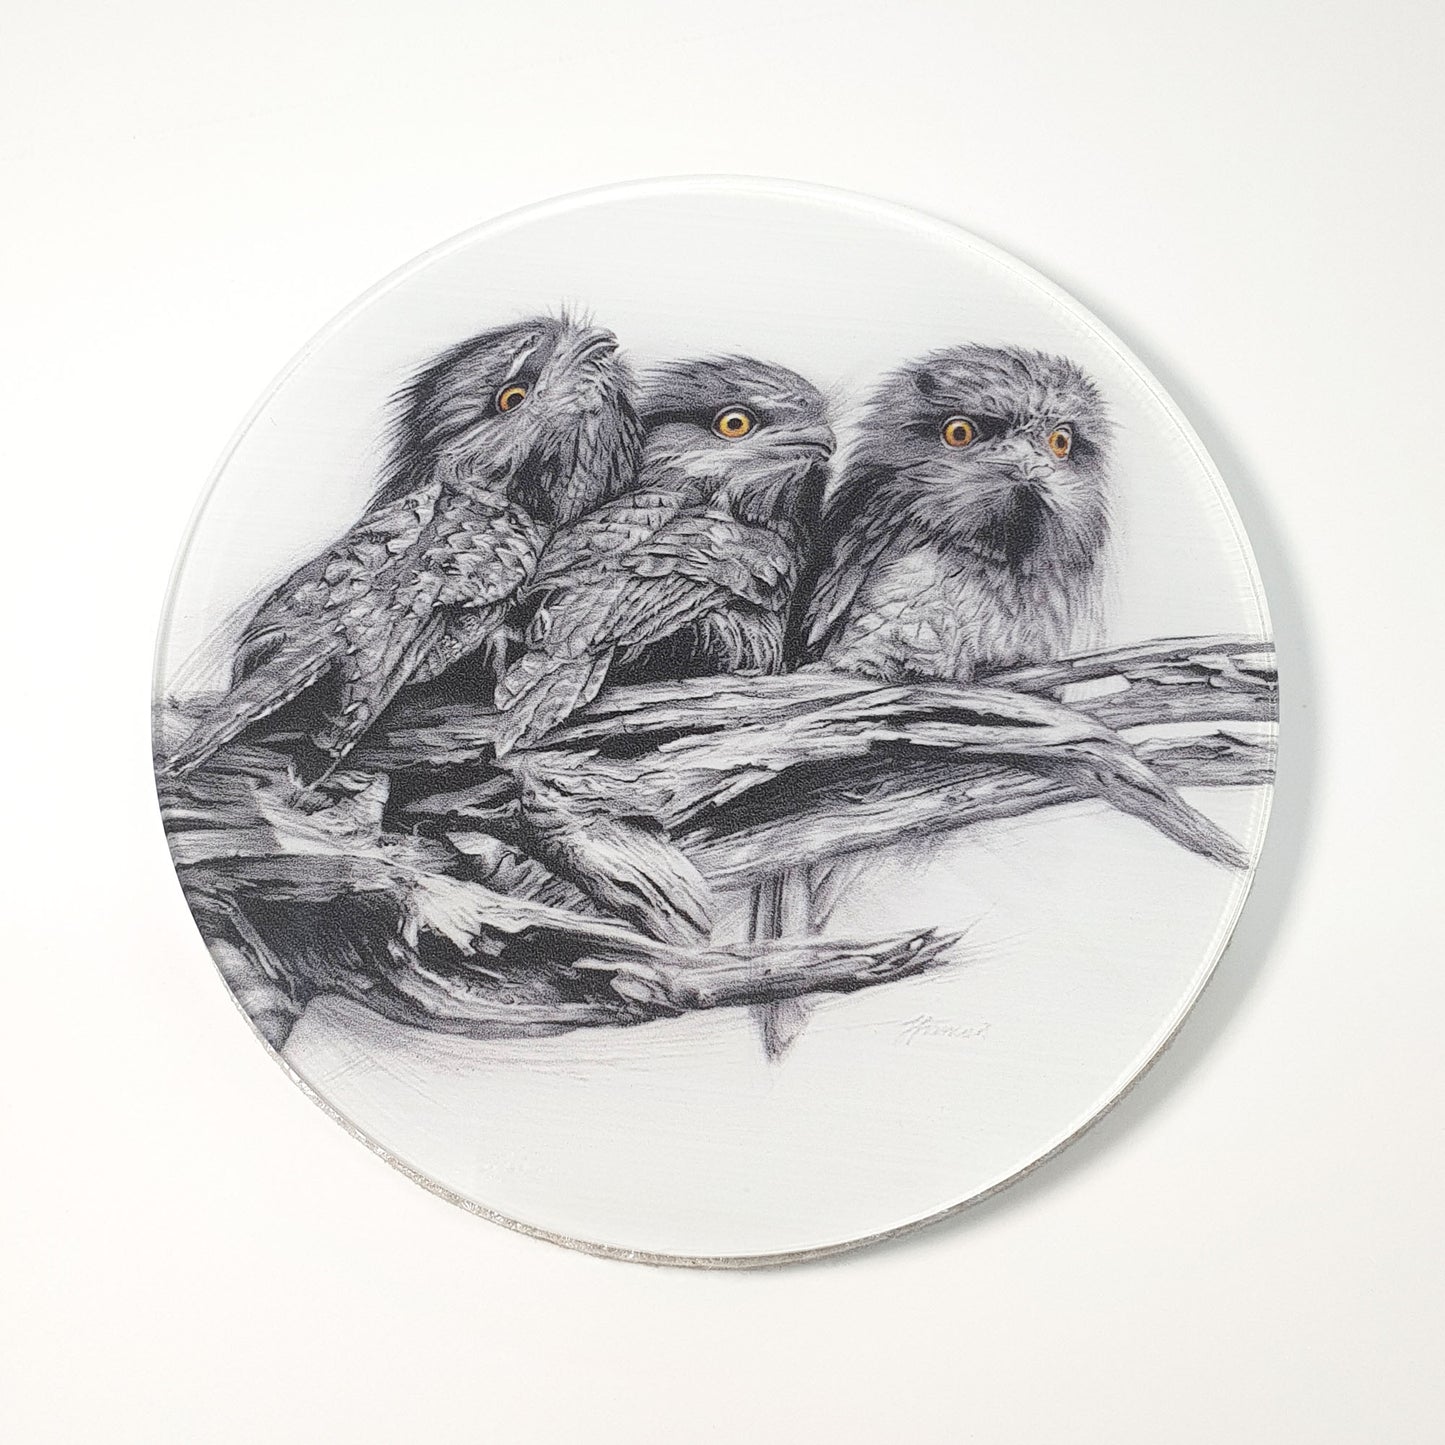 'Tawny Frogmouth Trio' acrylic coaster